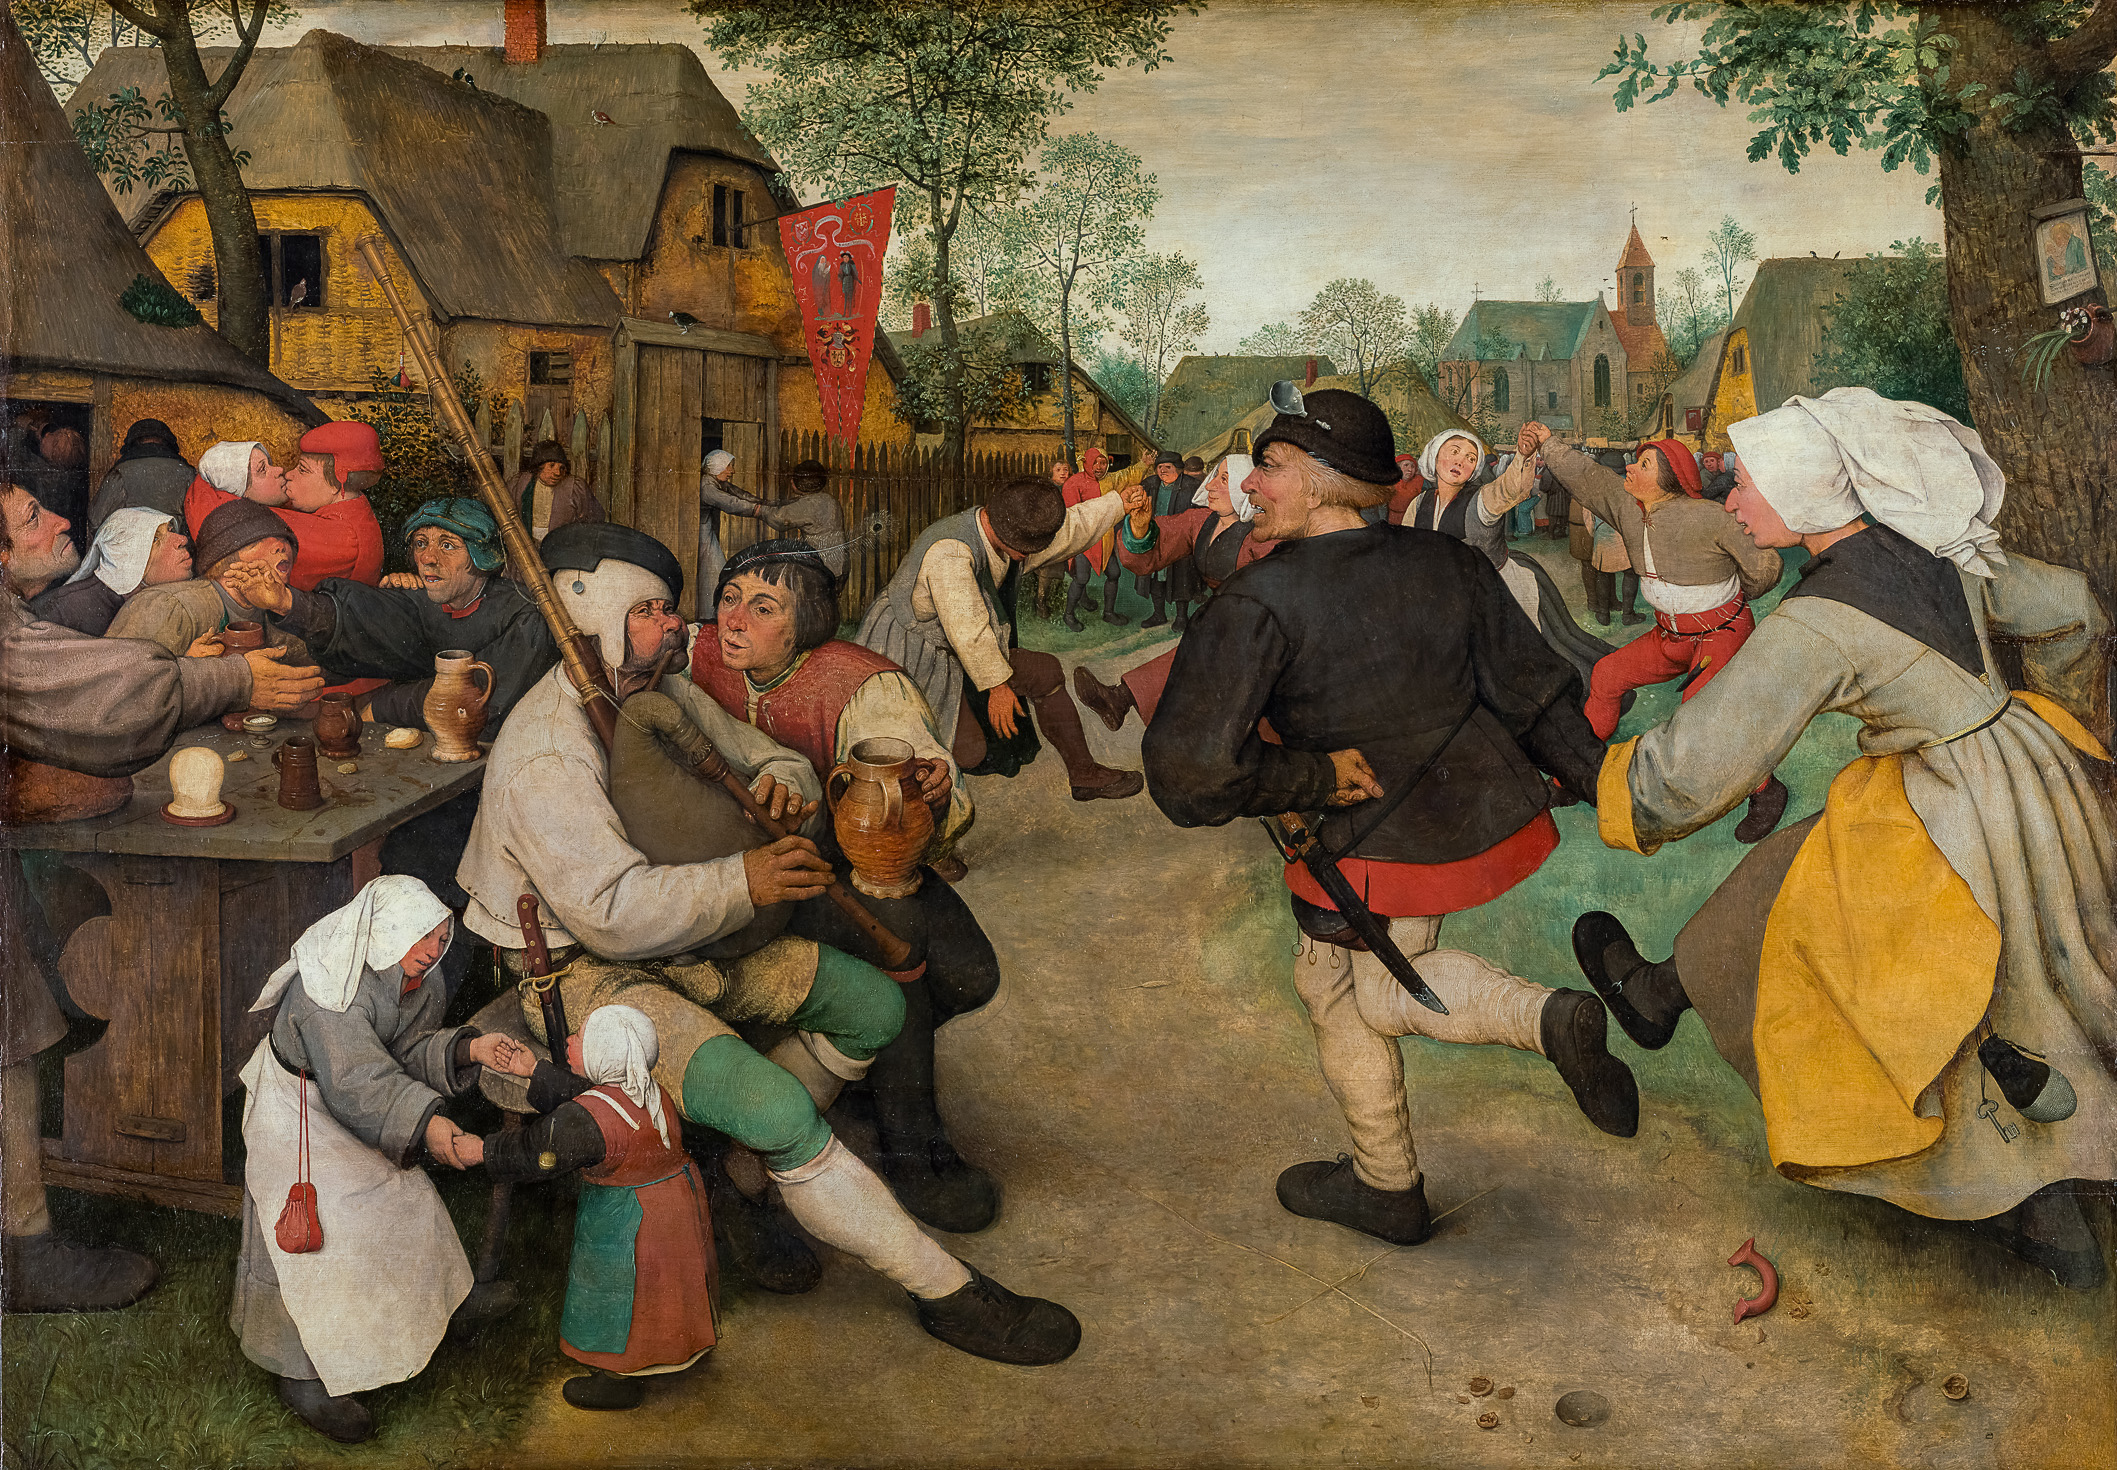 De boerendans by Pieter Bruegel de Oude - ca. 1568 - 114 cm × 164 cm Kunsthistorisches Museum